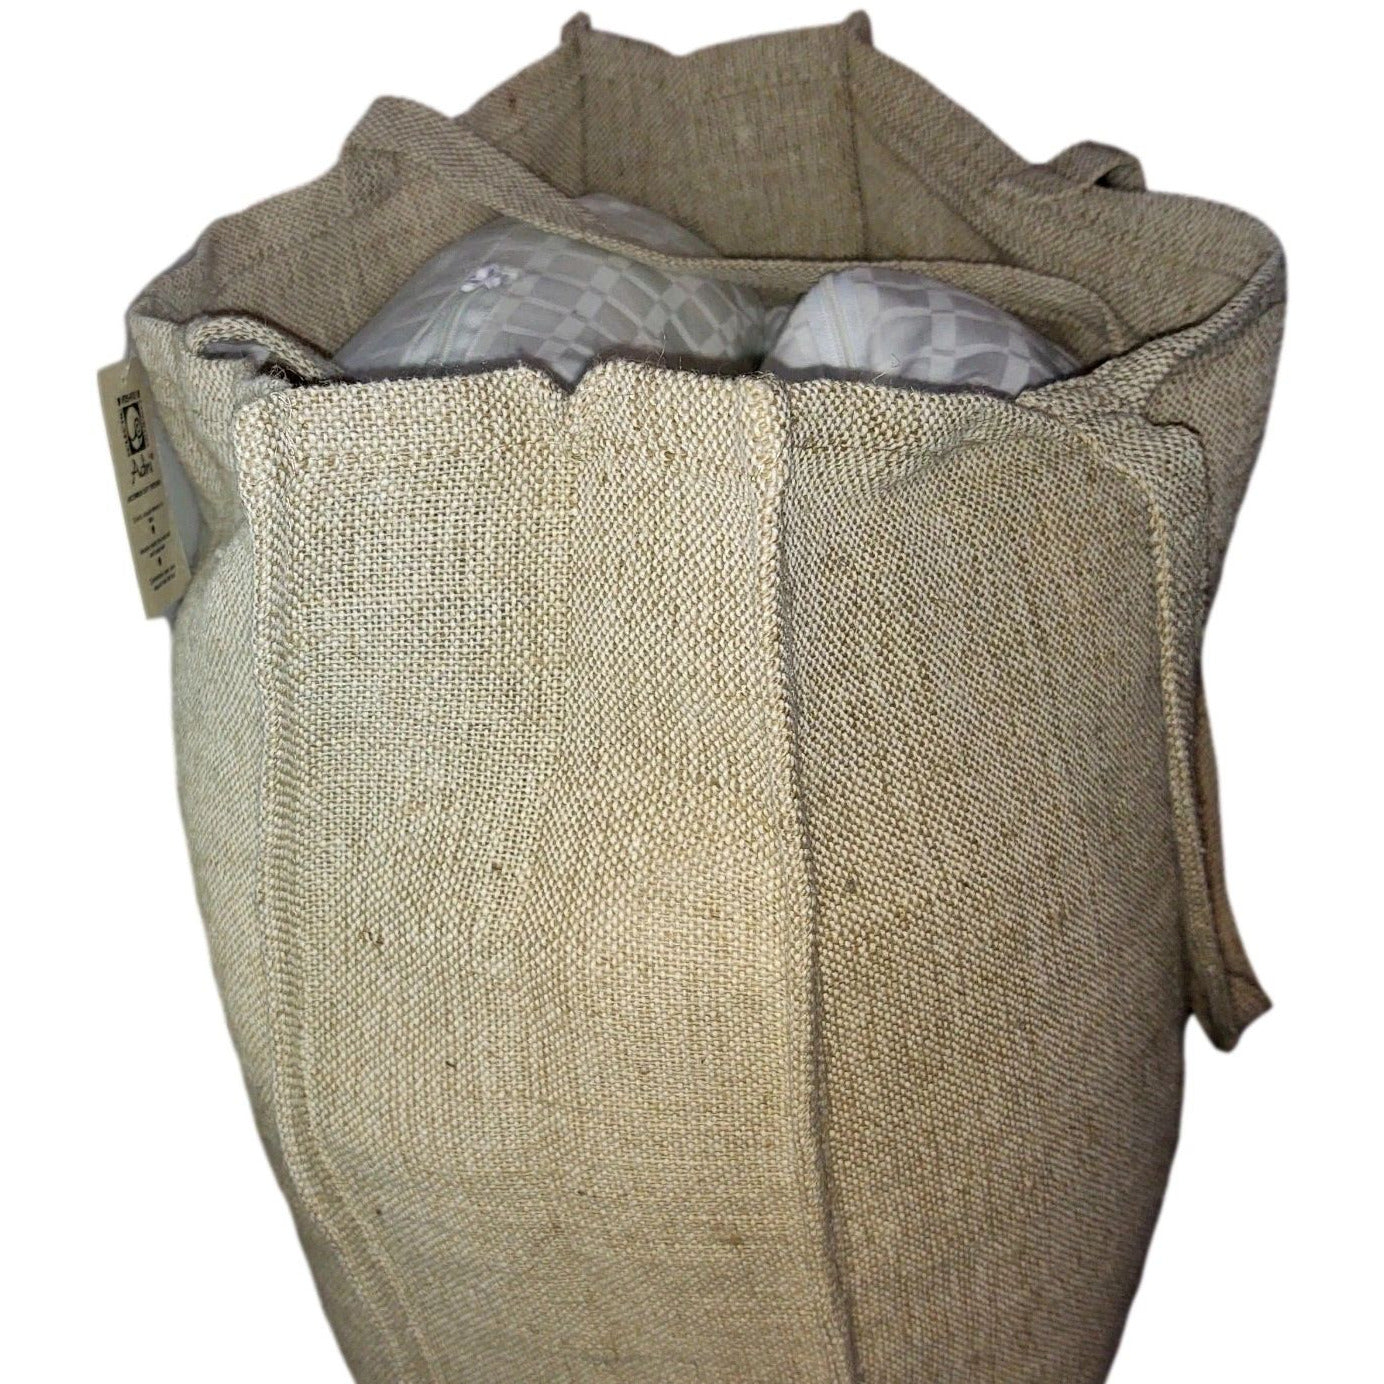 100% Natural Jute and Cotton Burlap Reusable Shopping Bag